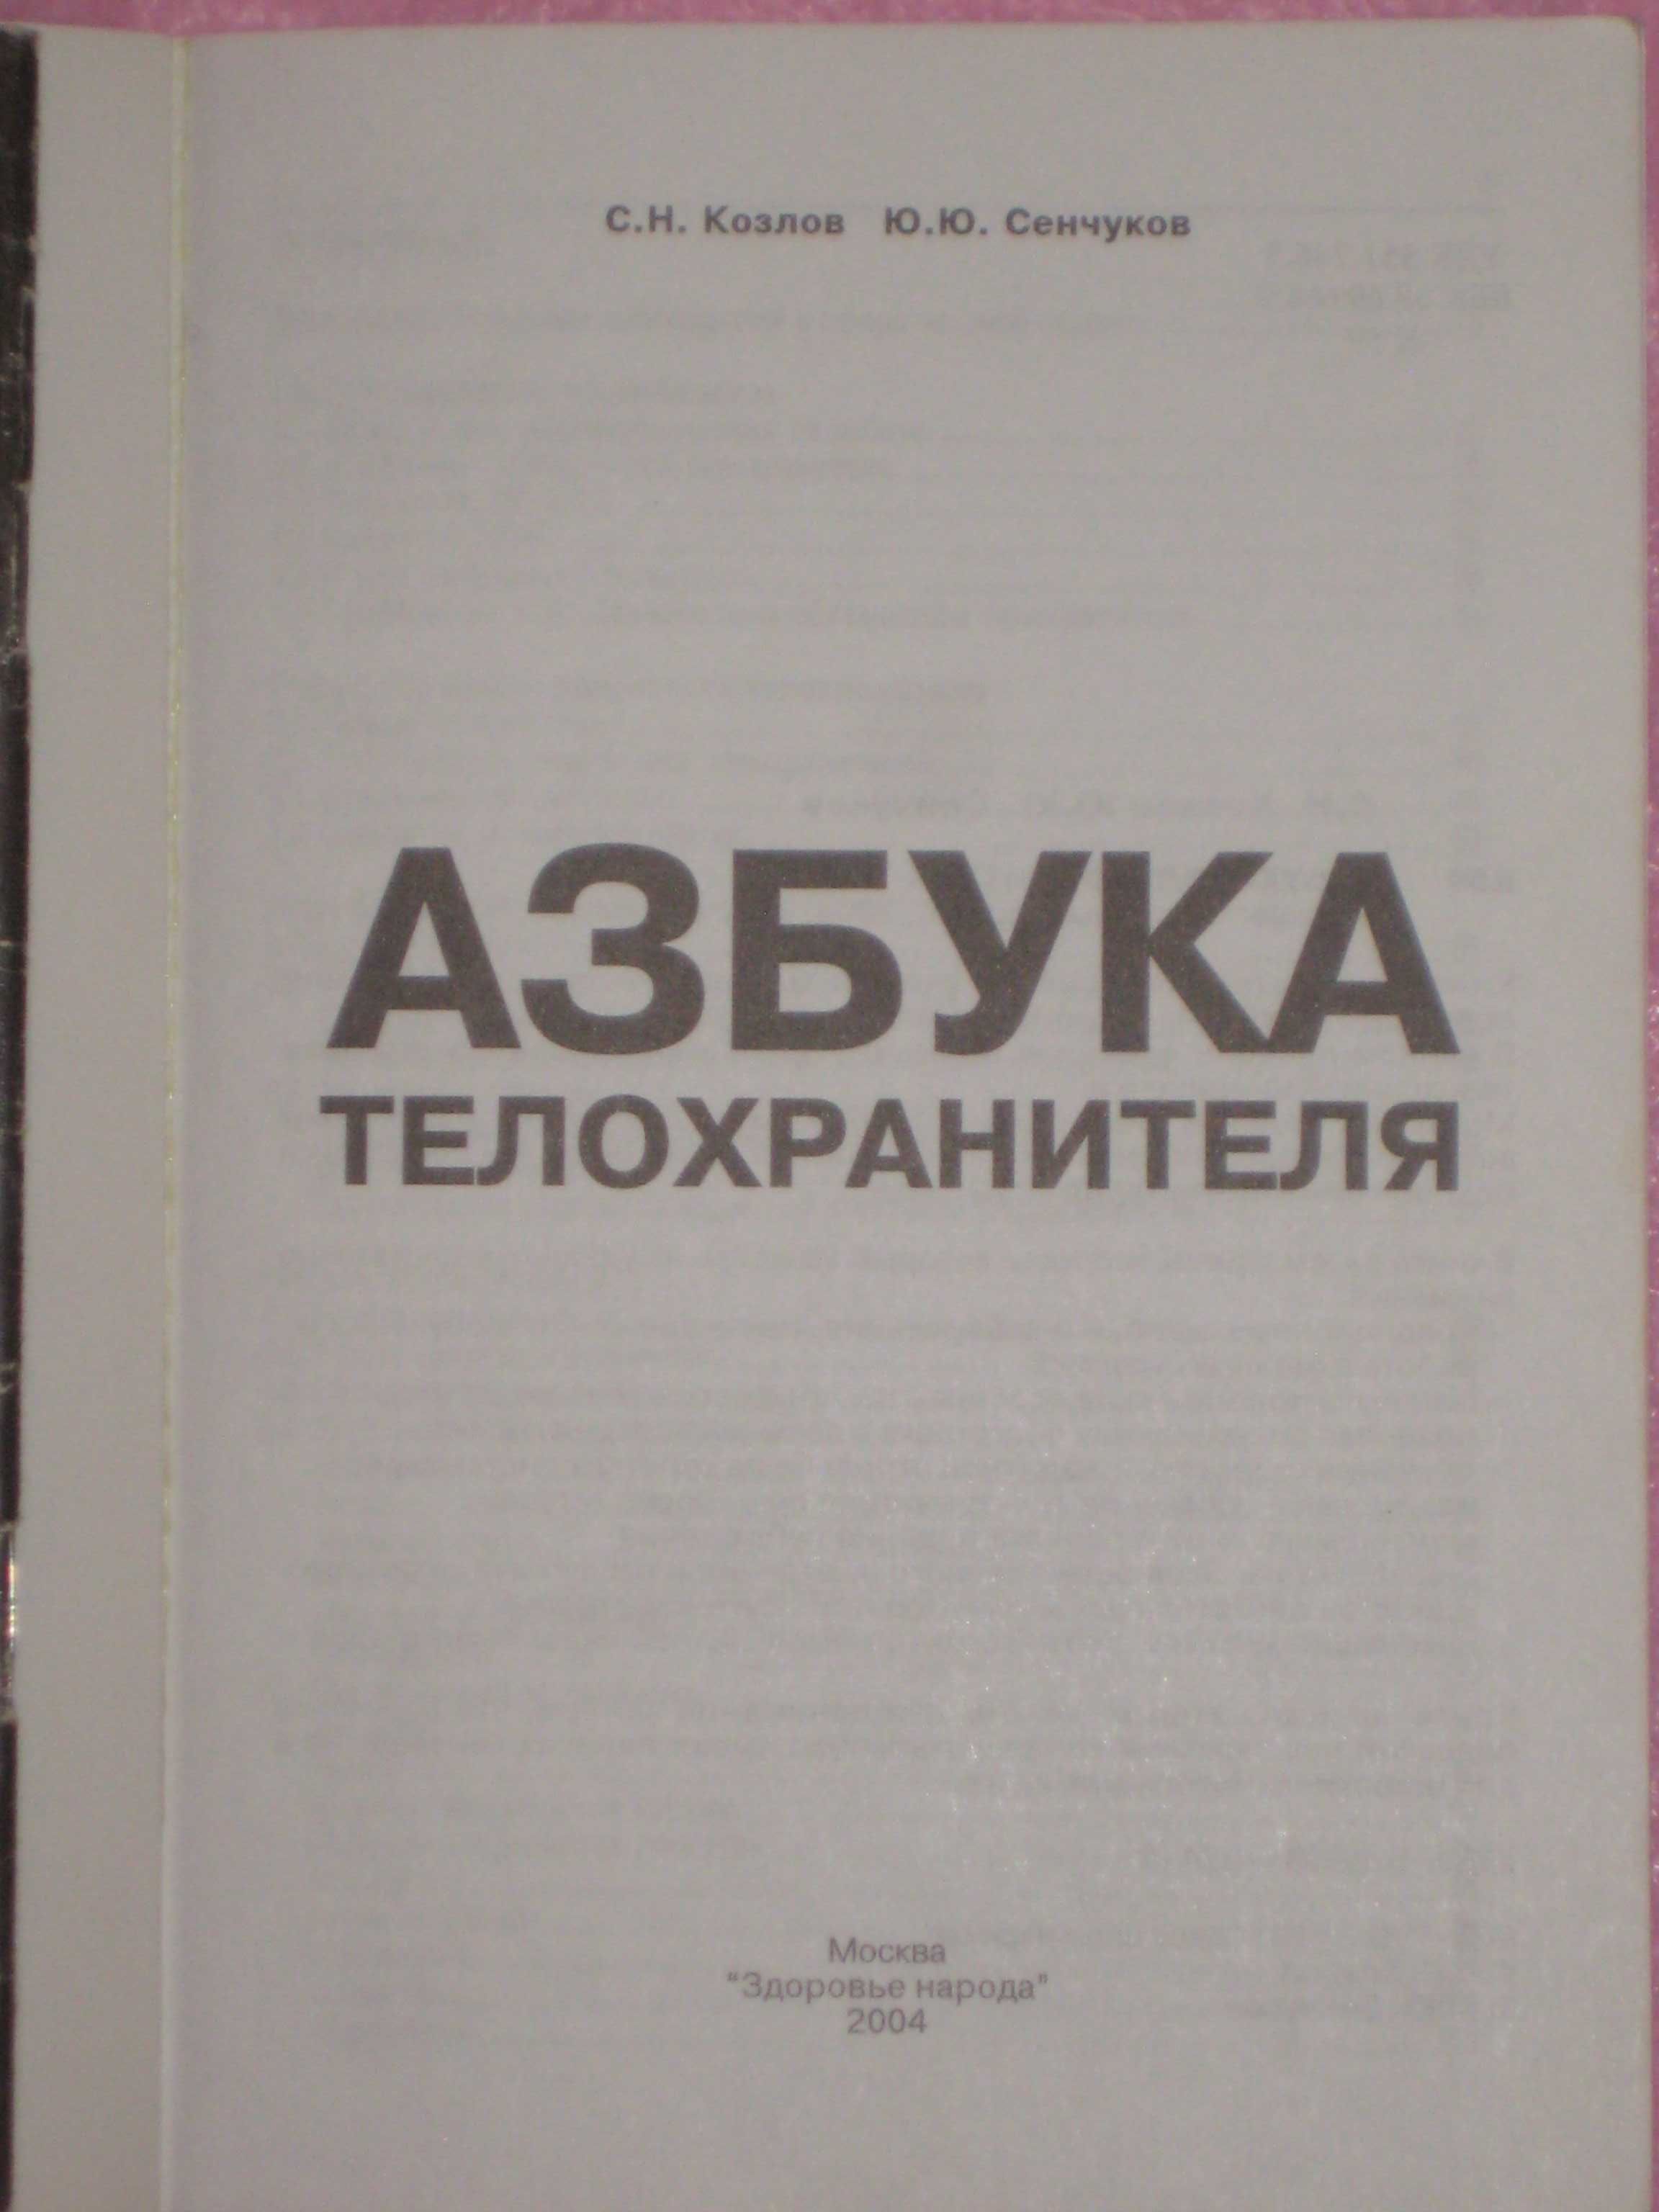 Азбука телохранителя (С.Н. Козлов Ю.Ю. Сенчуков) Учебник